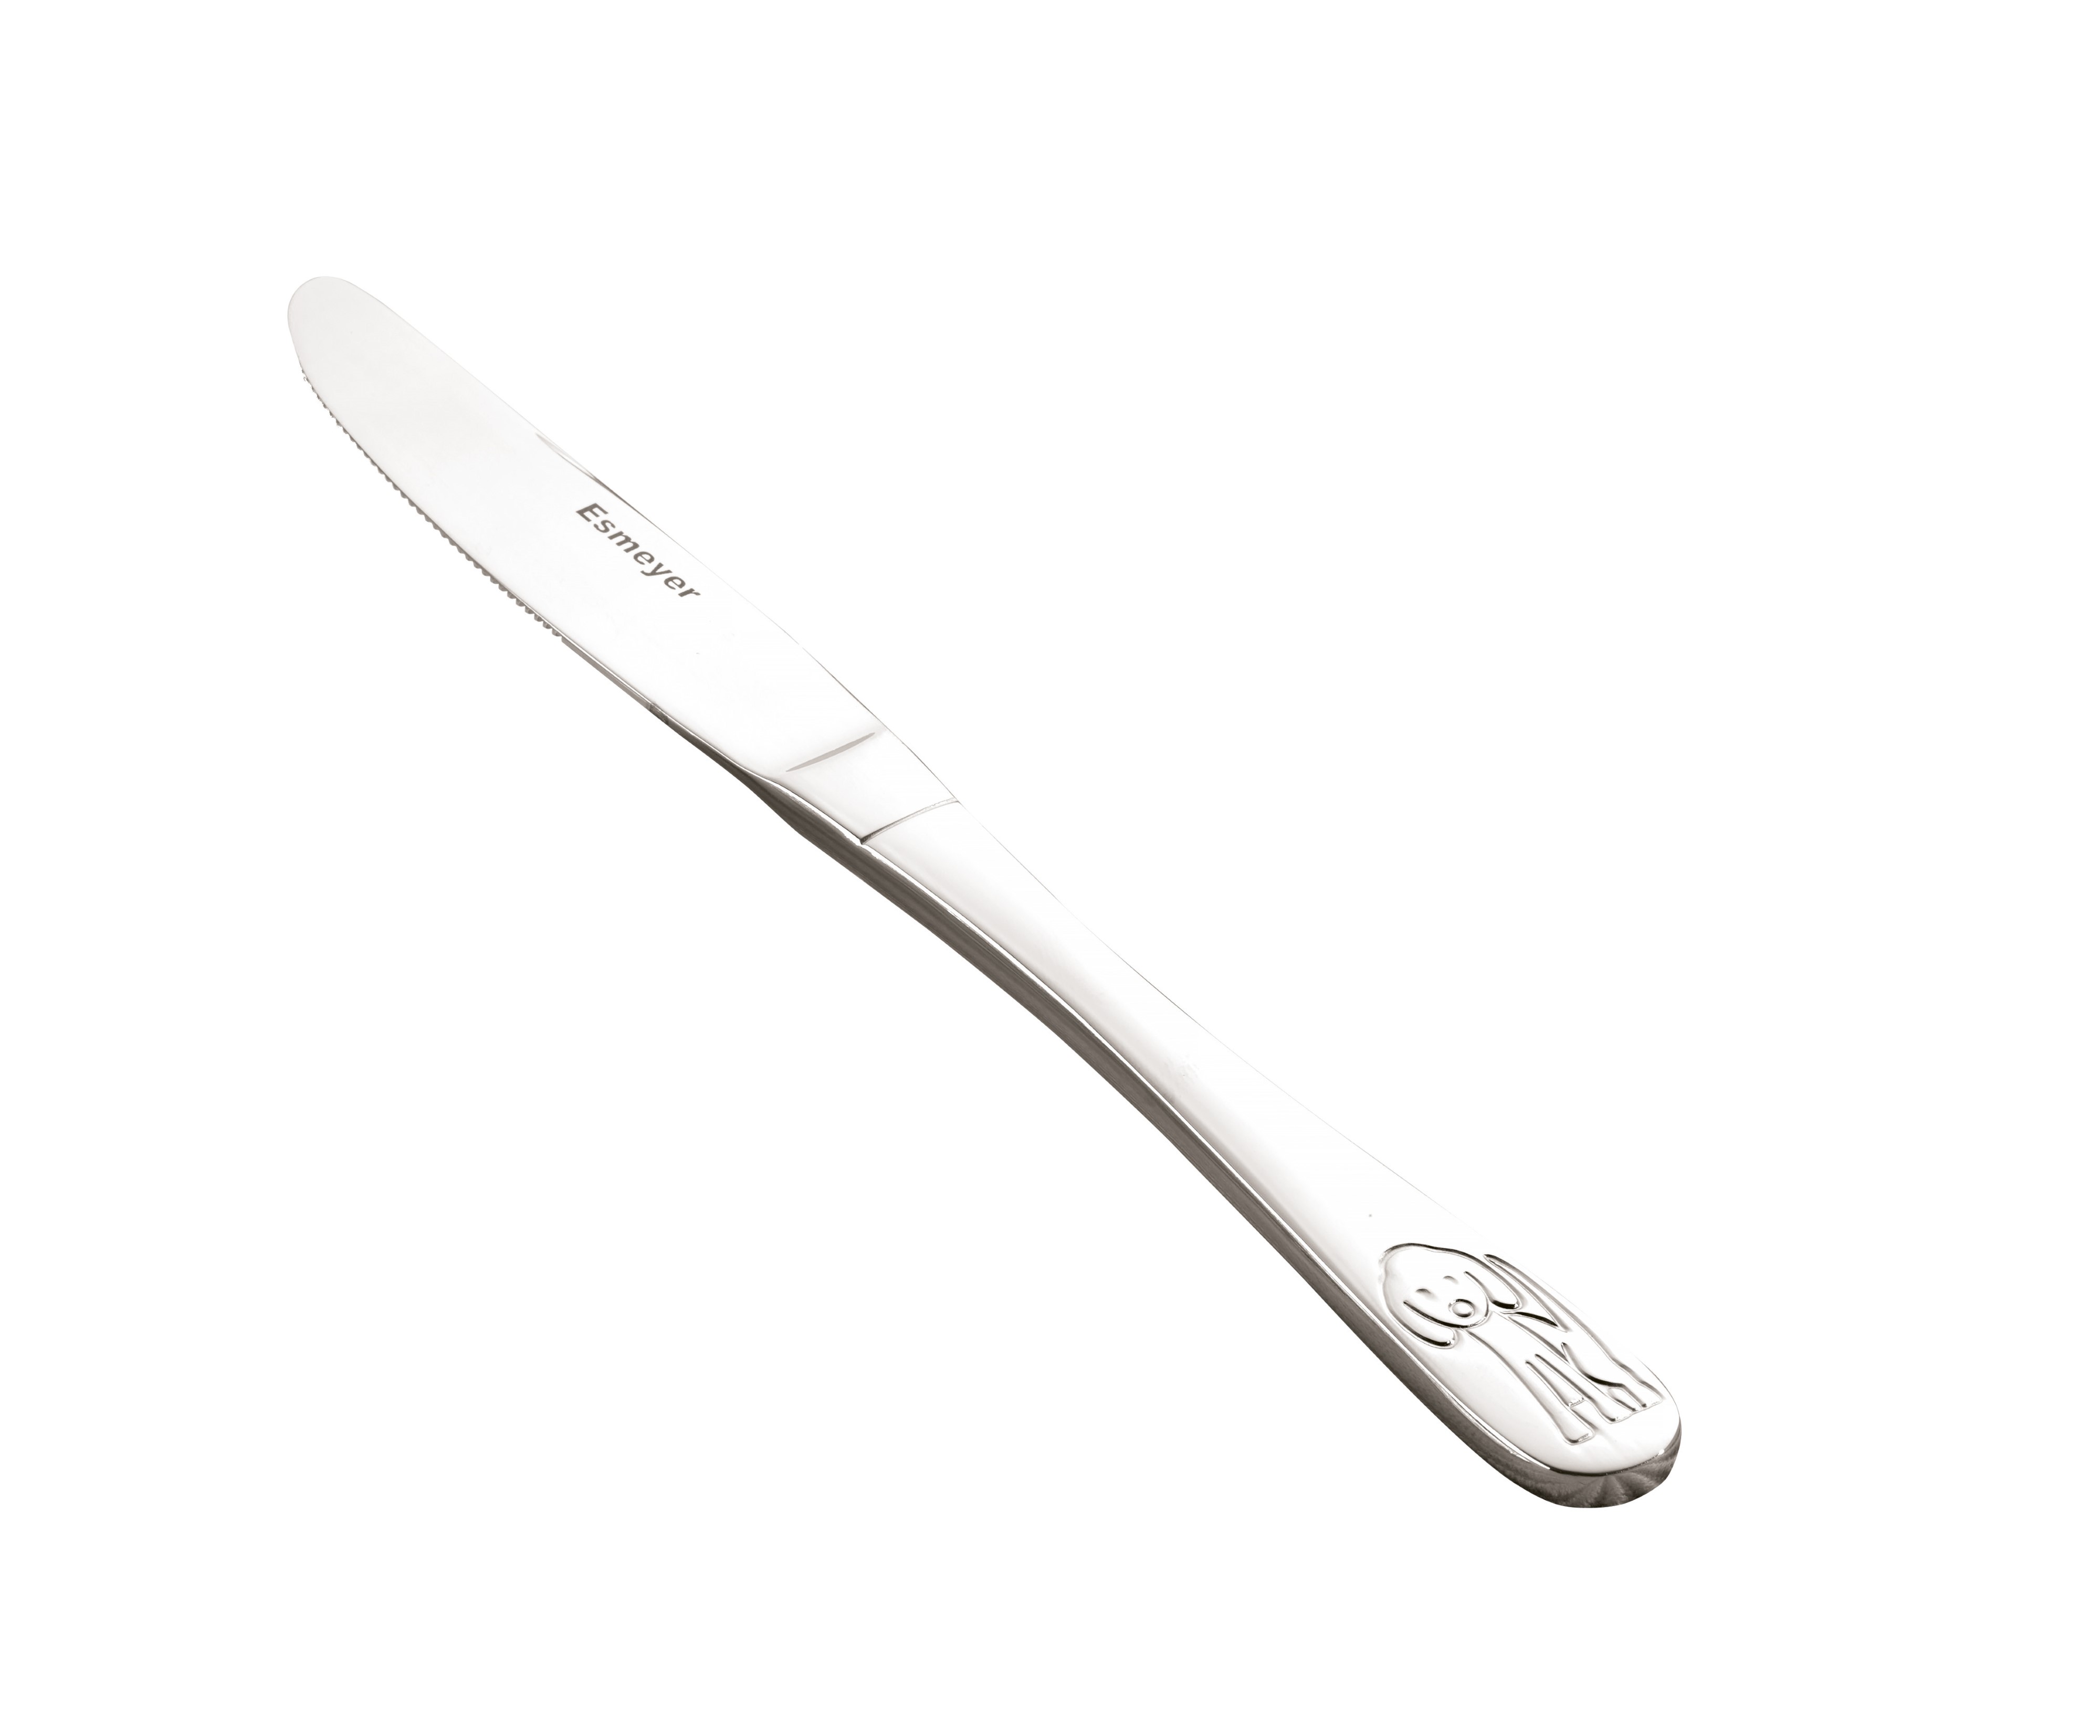 Kindermesser BAMBINO aus Chrom-Edelstahl, poliert. Ca. 18 cm lang. Kindermesser - nur leicht geschärft.